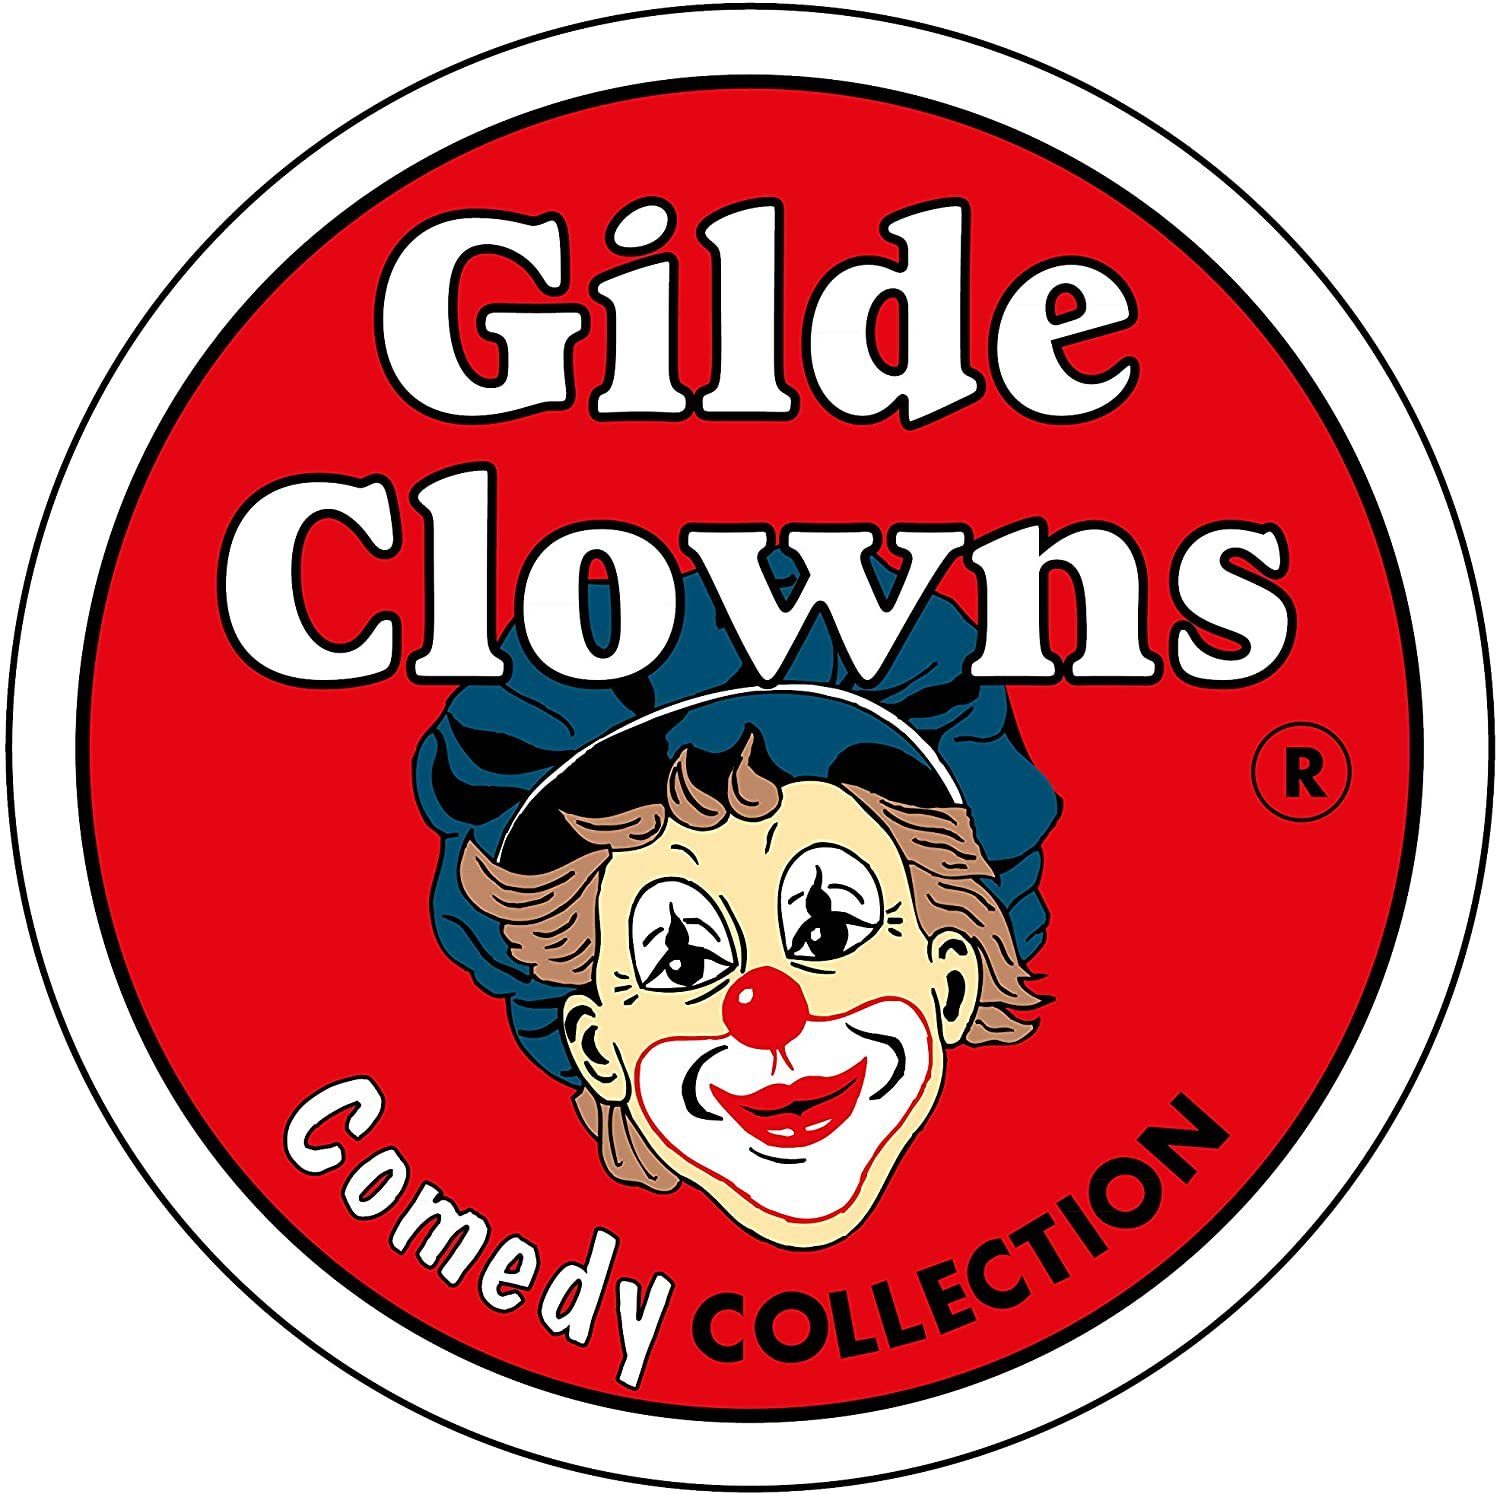 Indoor Sammelfigur Clown Auf Pirsch der GILDE - Gildeclowns - Dekofigur